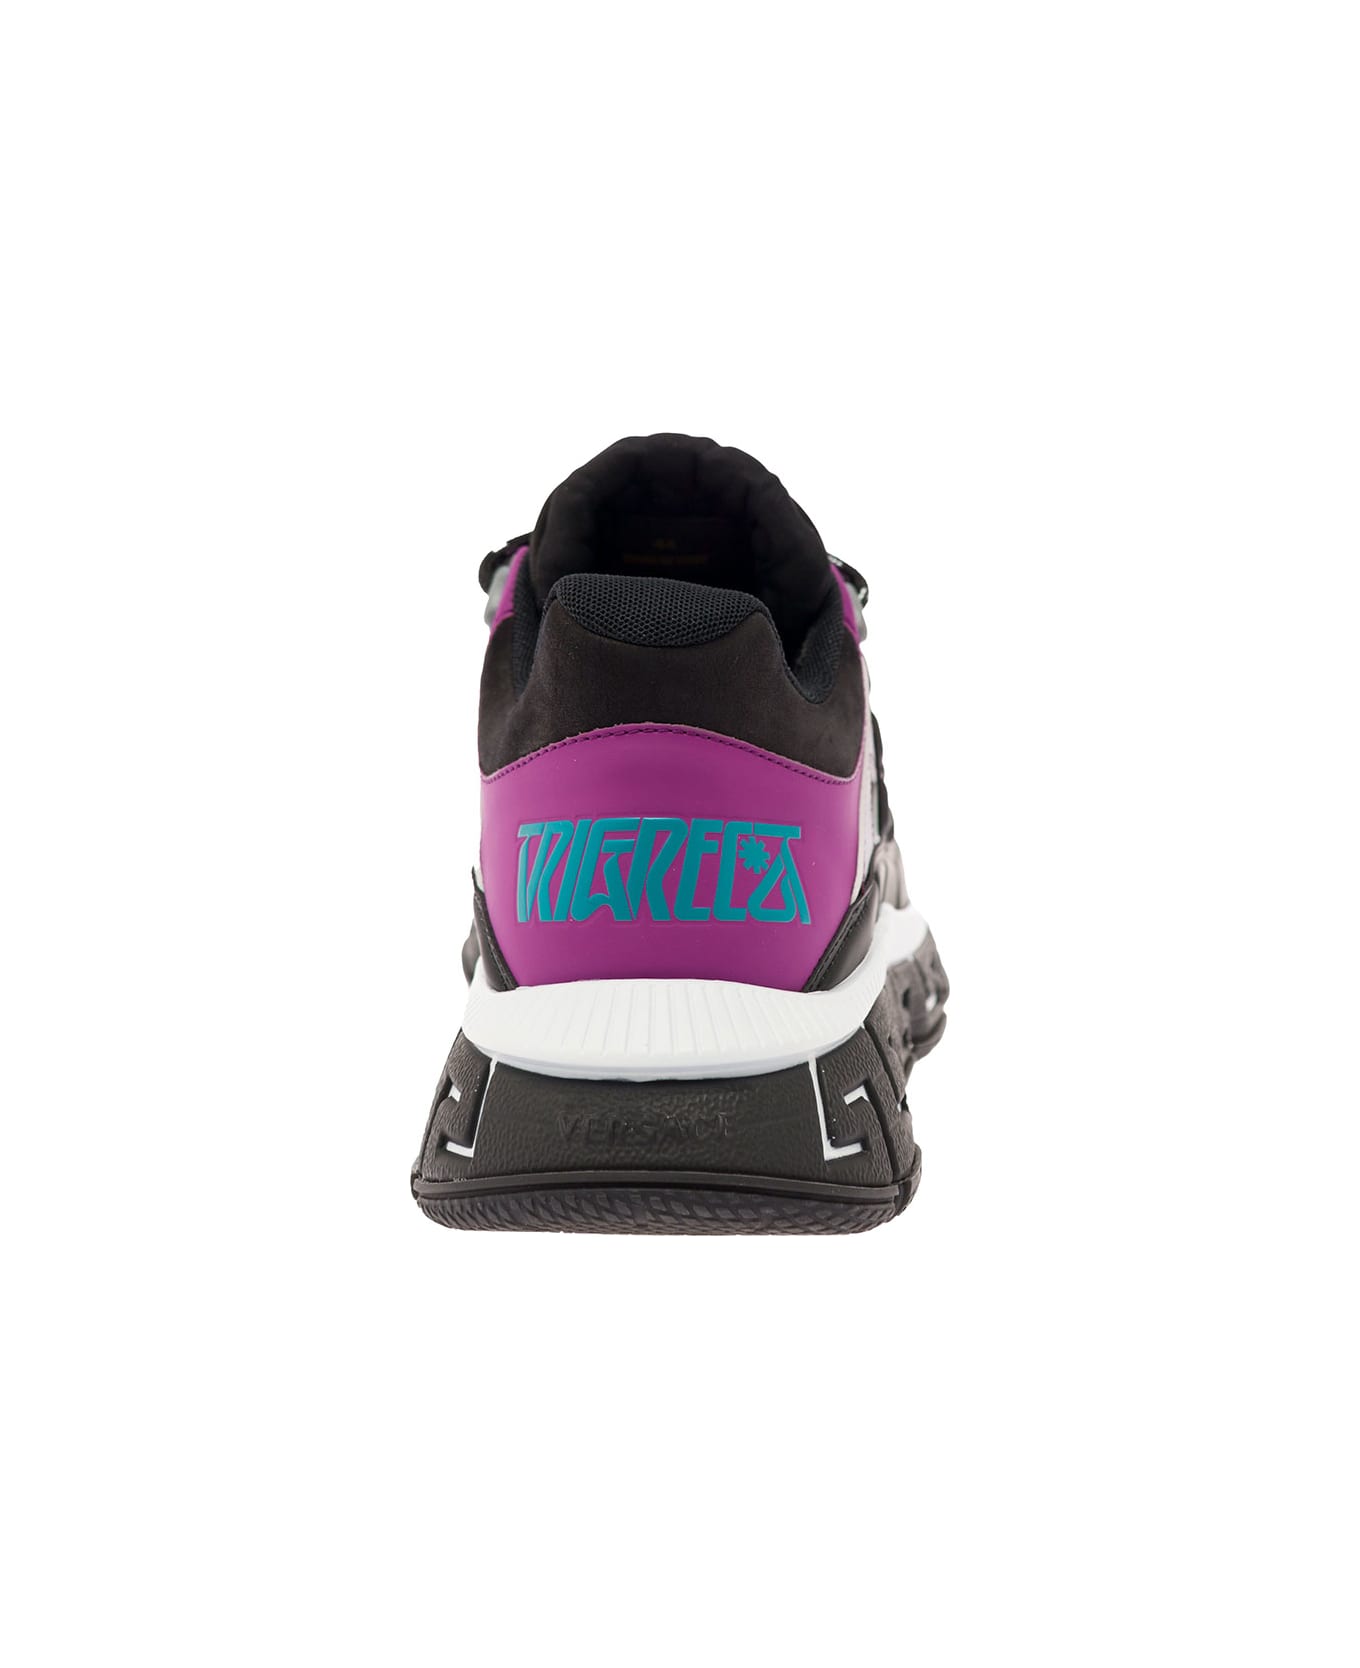 Versace Trigreca Sneakers - Violet